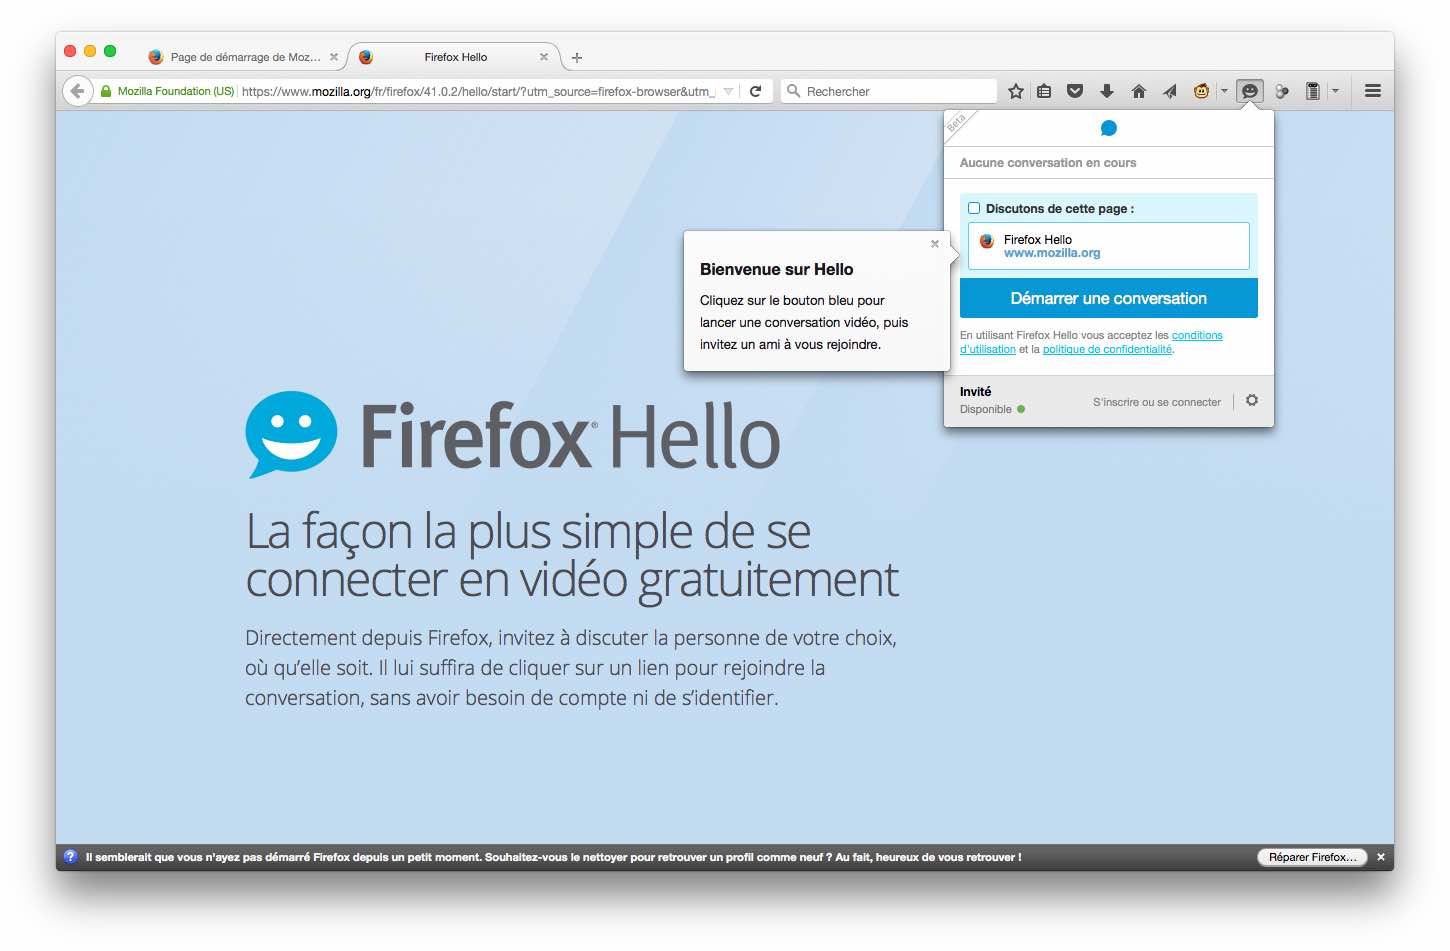 Mozilla Firefox Hello